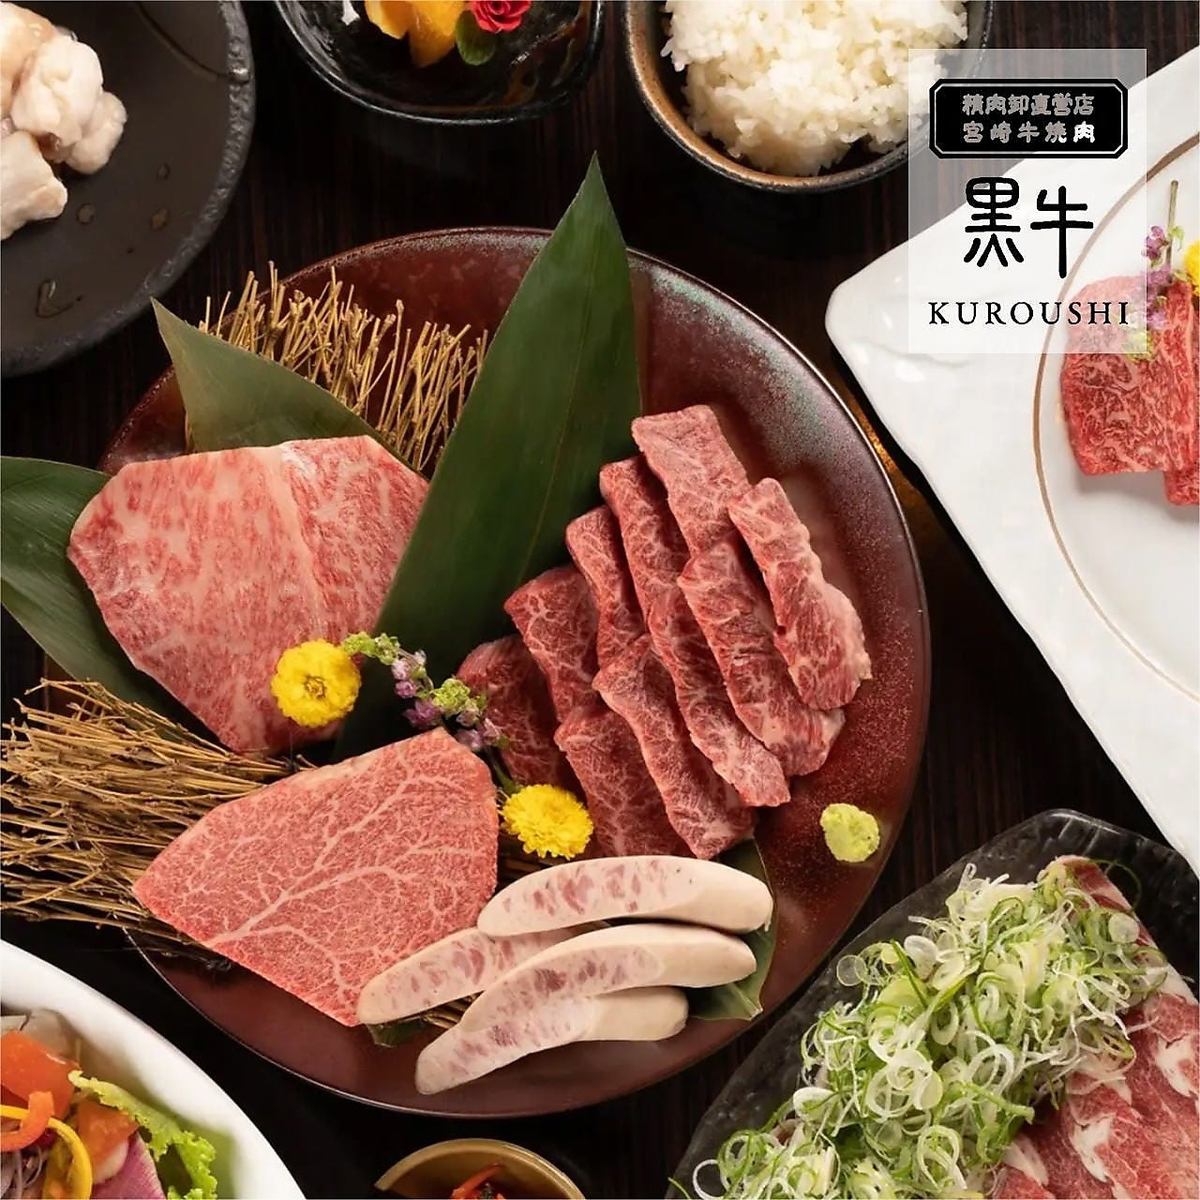 肉类批发商直营店 享受高品质的宫崎牛!推荐聚会，2小时无限畅饮套餐4,500日元起